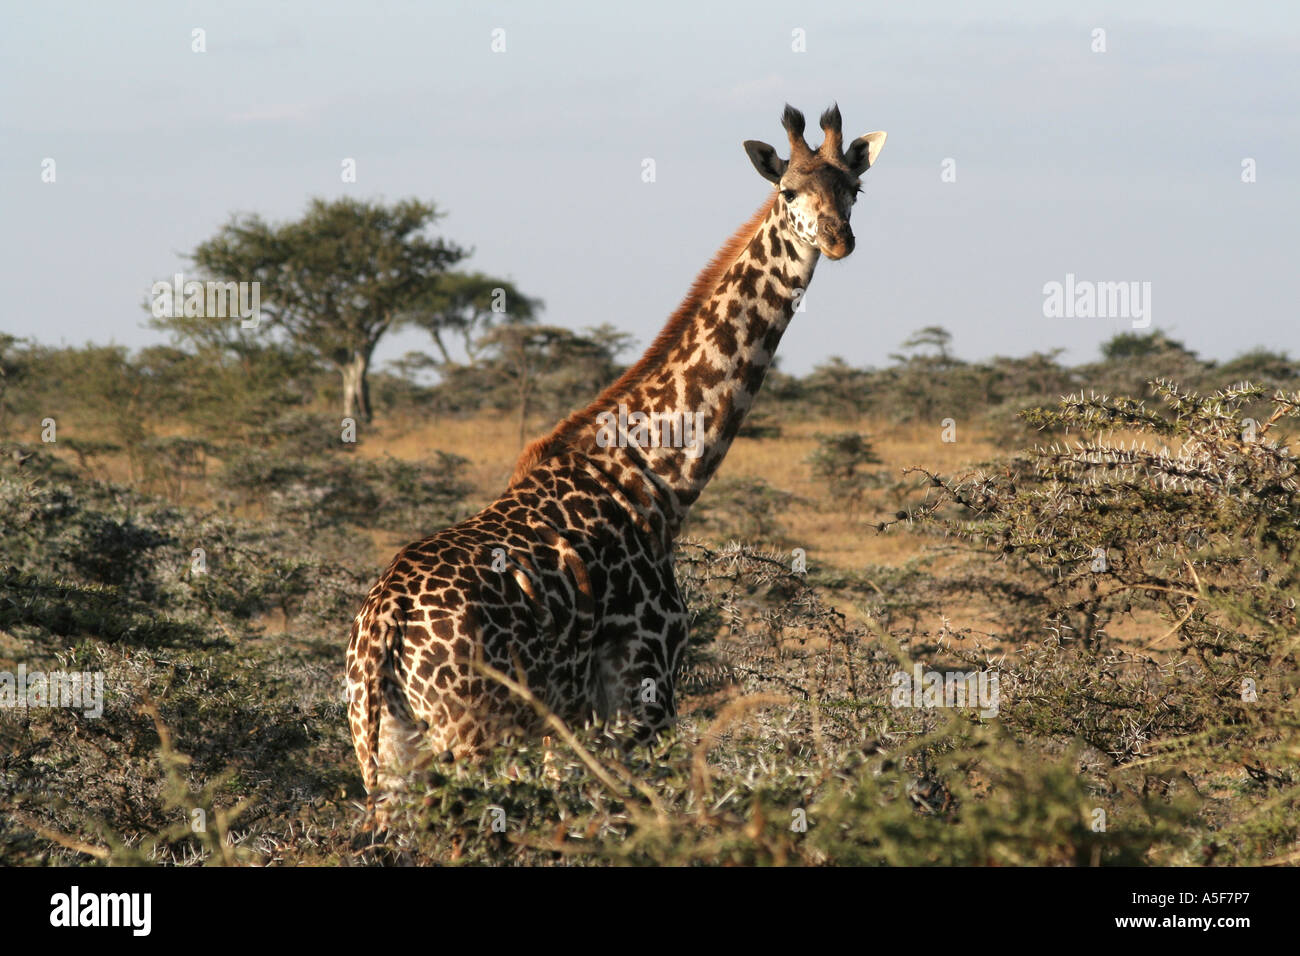 Giraffe, african Masai Giraffe, Masai Mara, Kenya Stock Photo